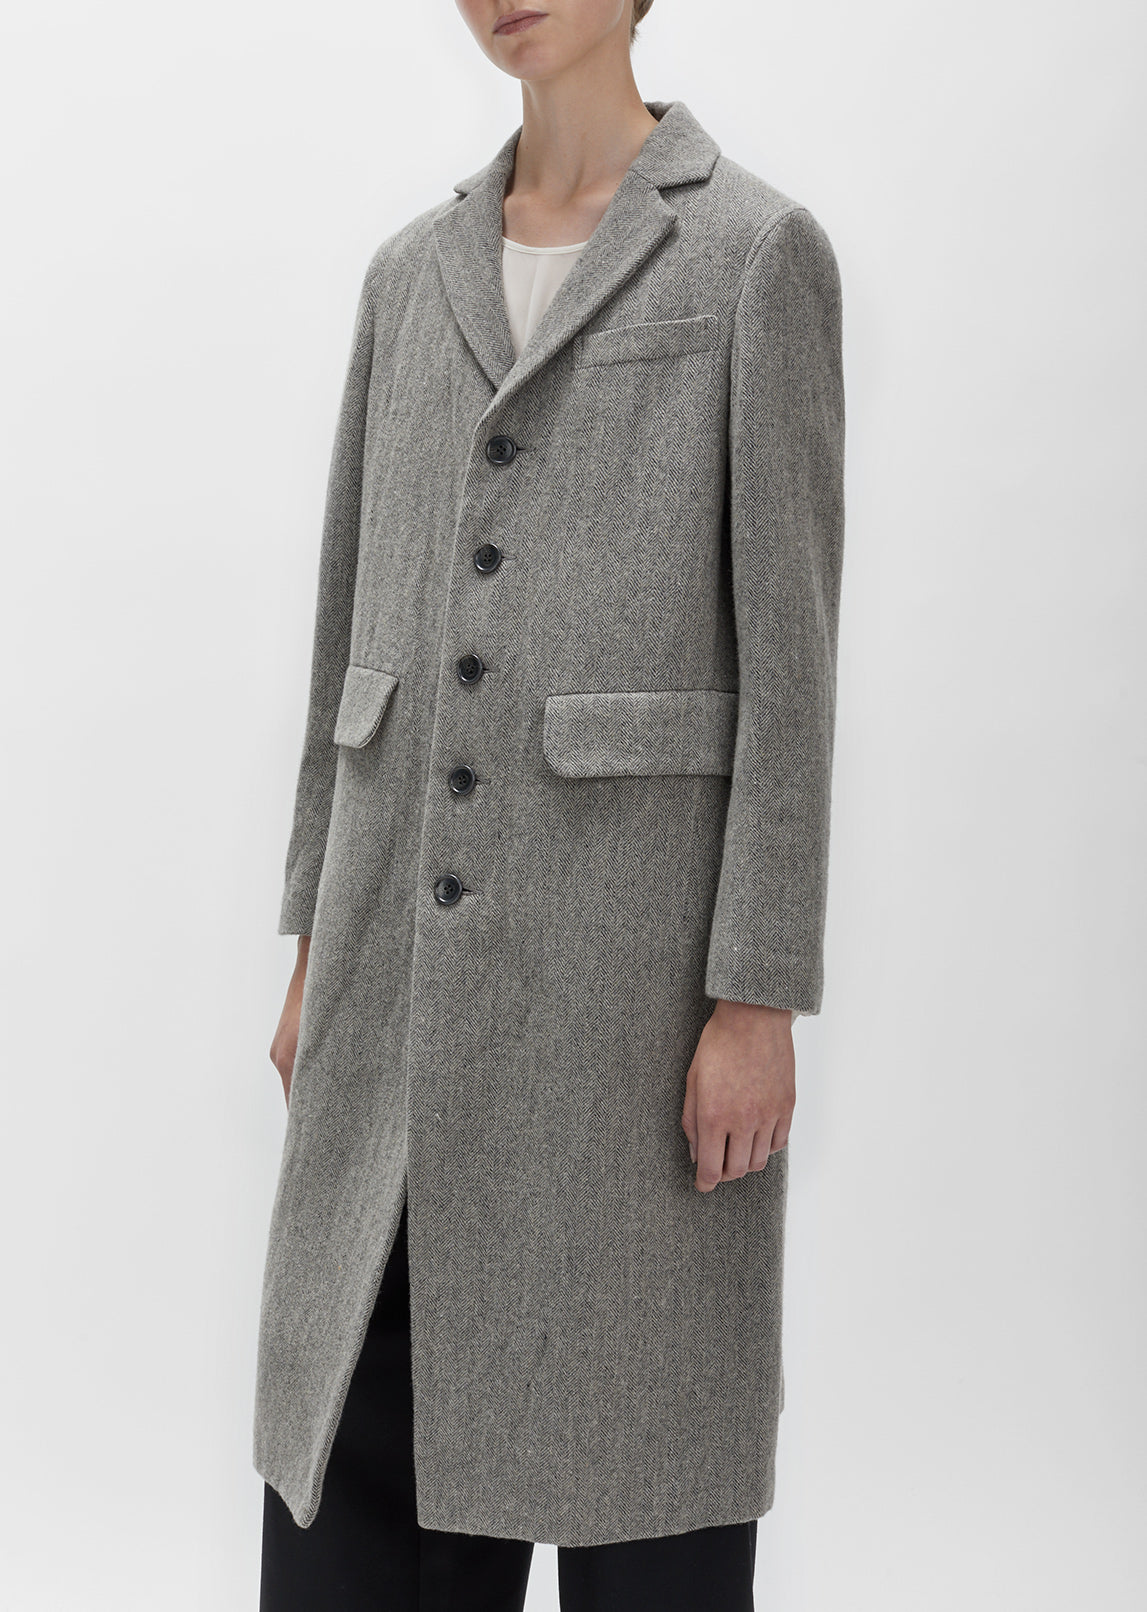 Herringbone Tweed Coat by Zucca- La Garçonne